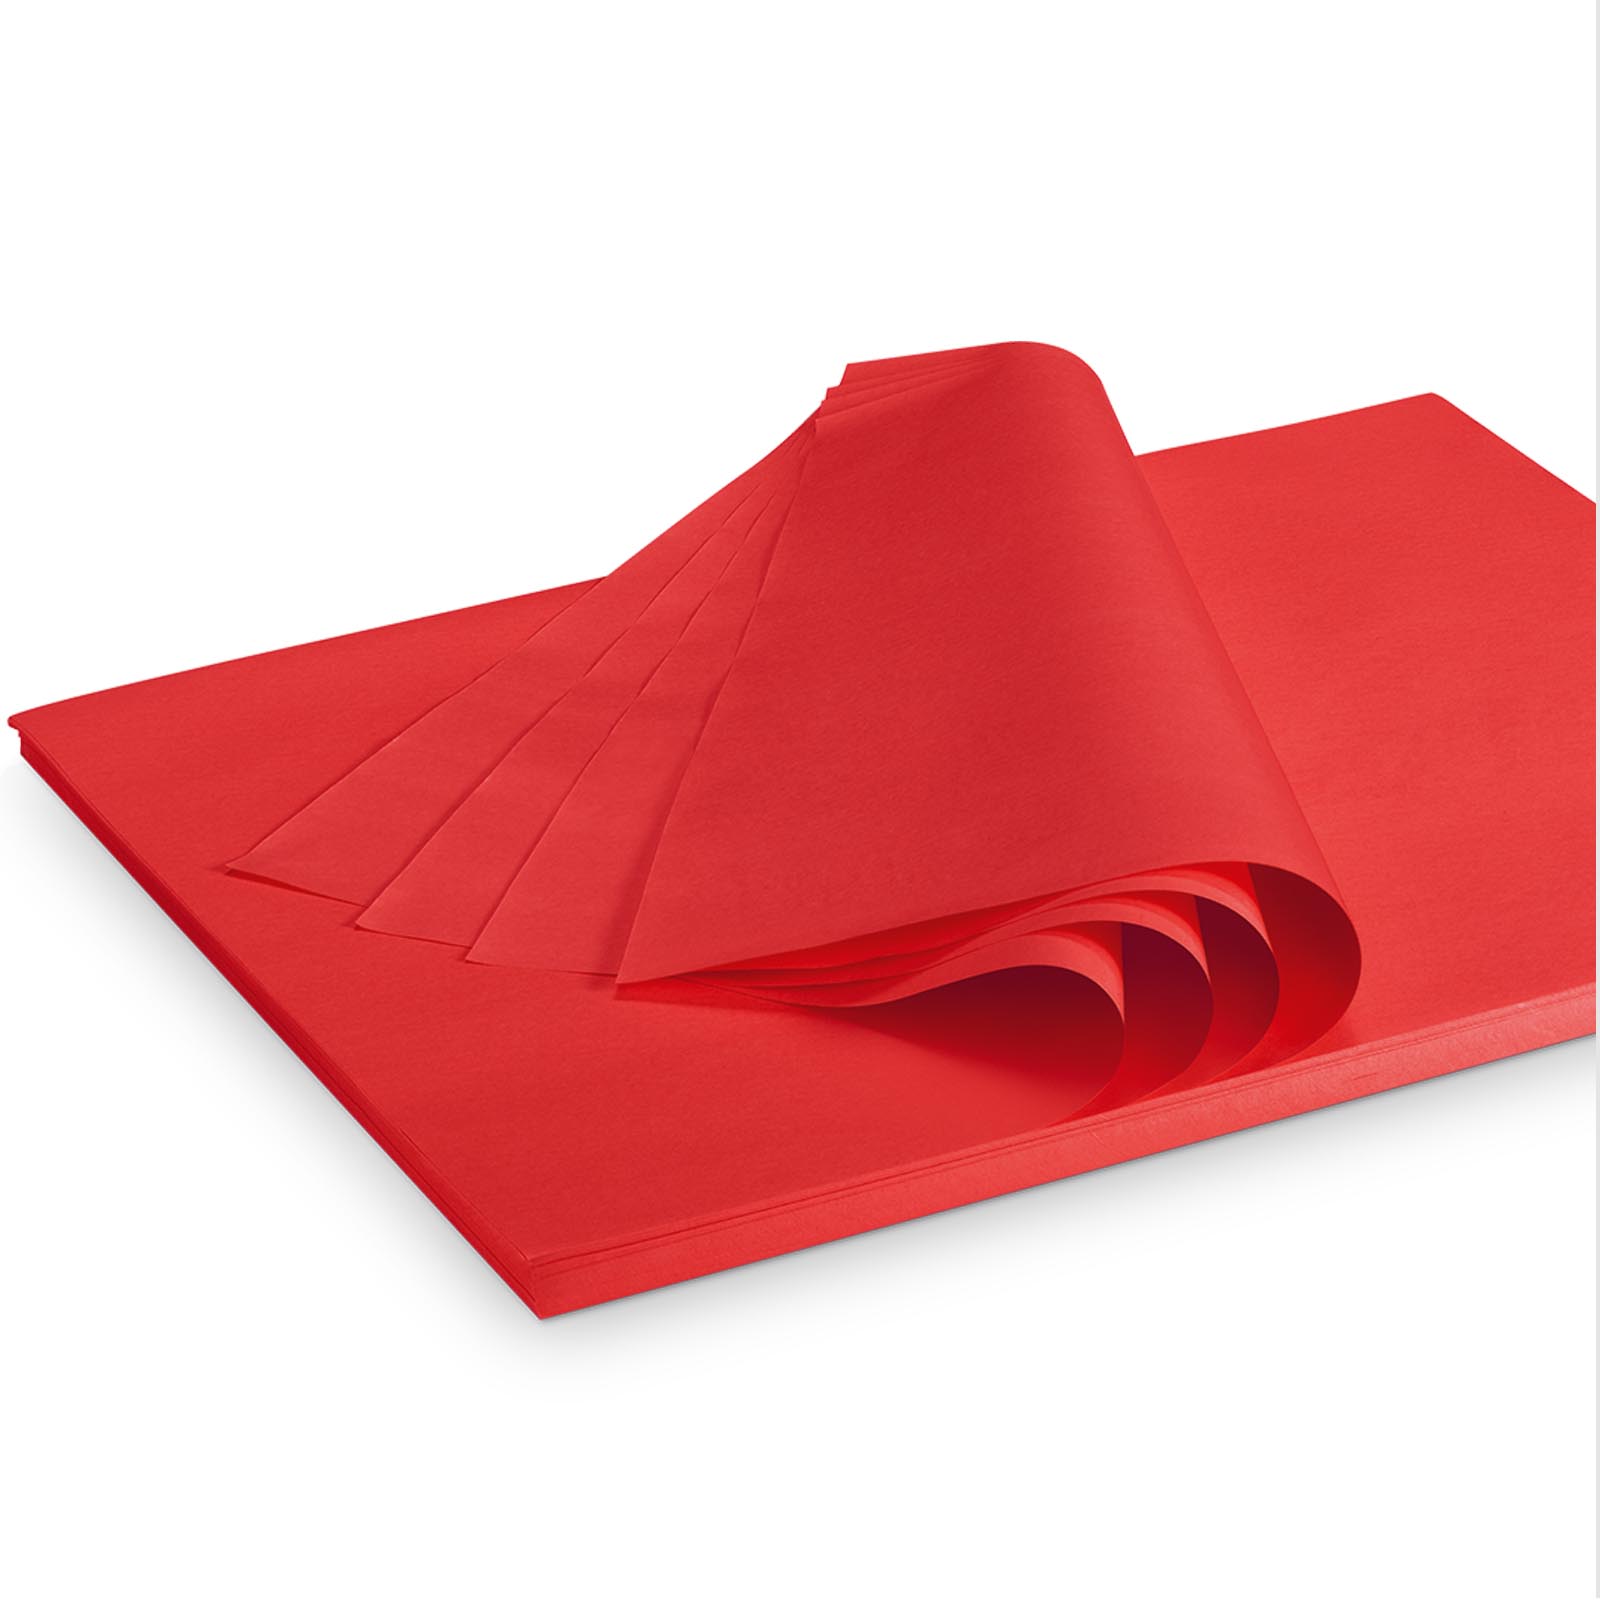 Seidenpapier rot 375x500mm 35g/m²,300 Bogen/ Karton = 2kg